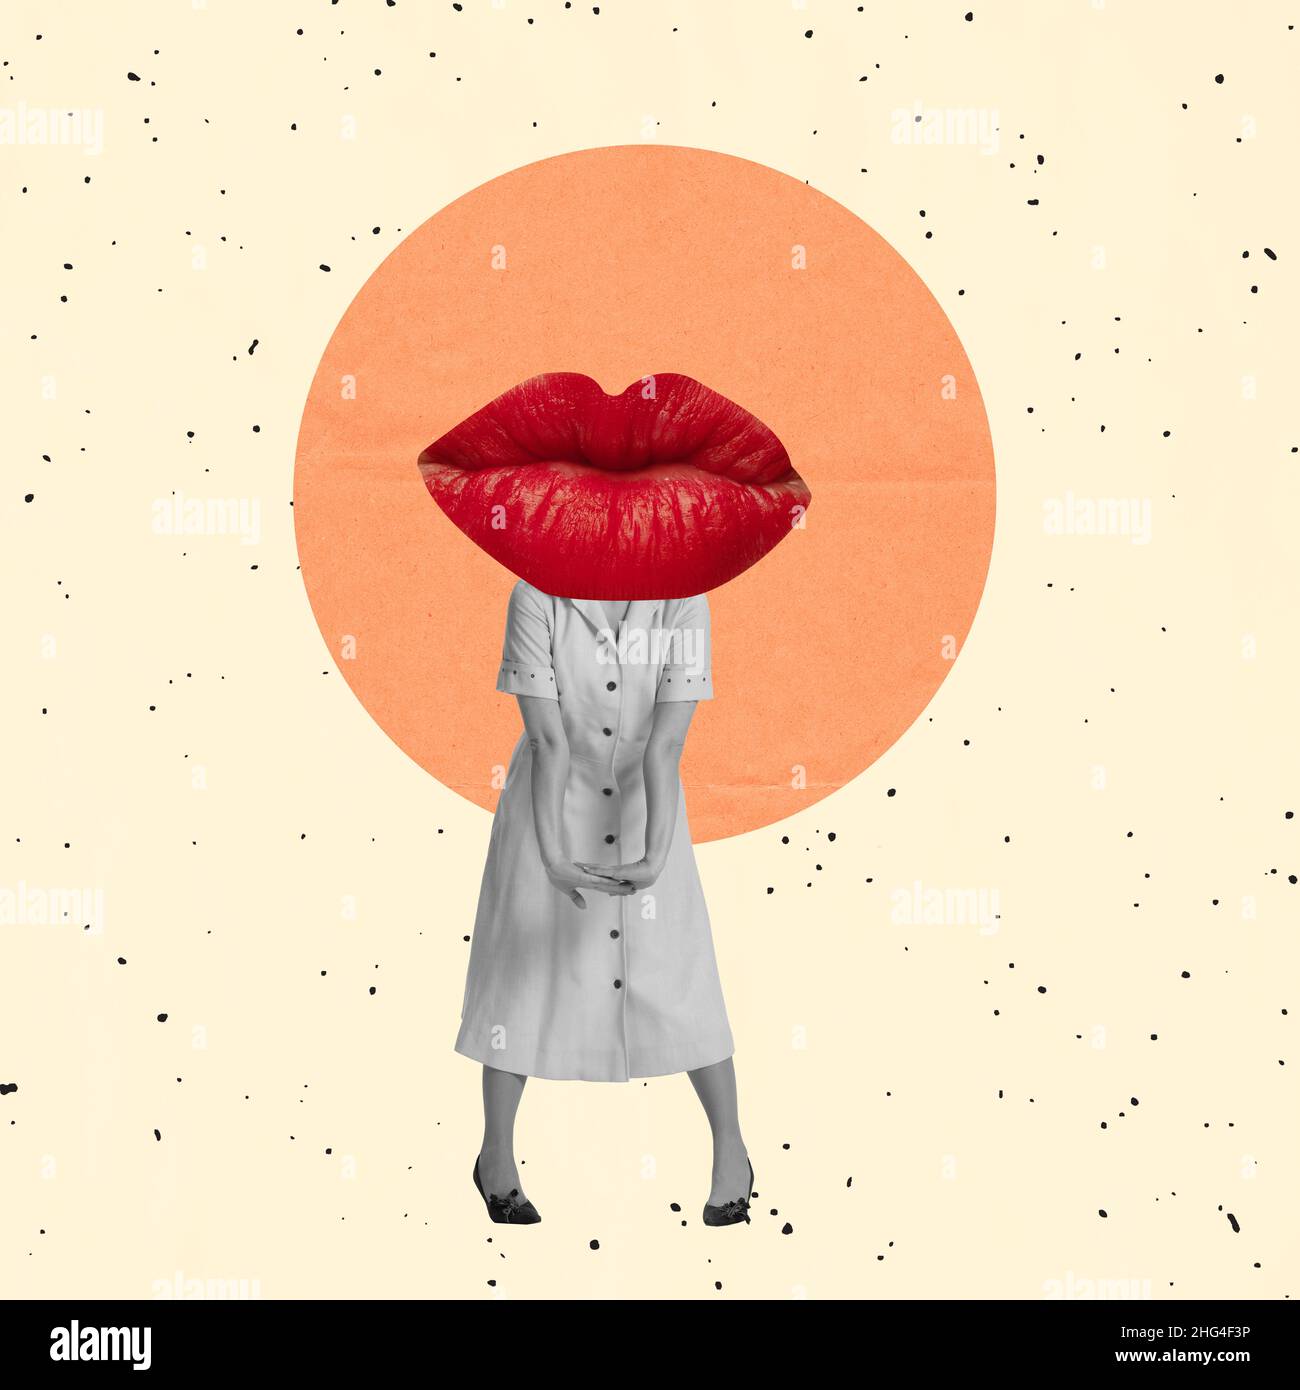 Collage de arte contemporáneo. Inspiración, idea, estilo de revista urbana de moda. Niña joven de estilo vintage vestido con los labios femeninos rojos en la luz Foto de stock